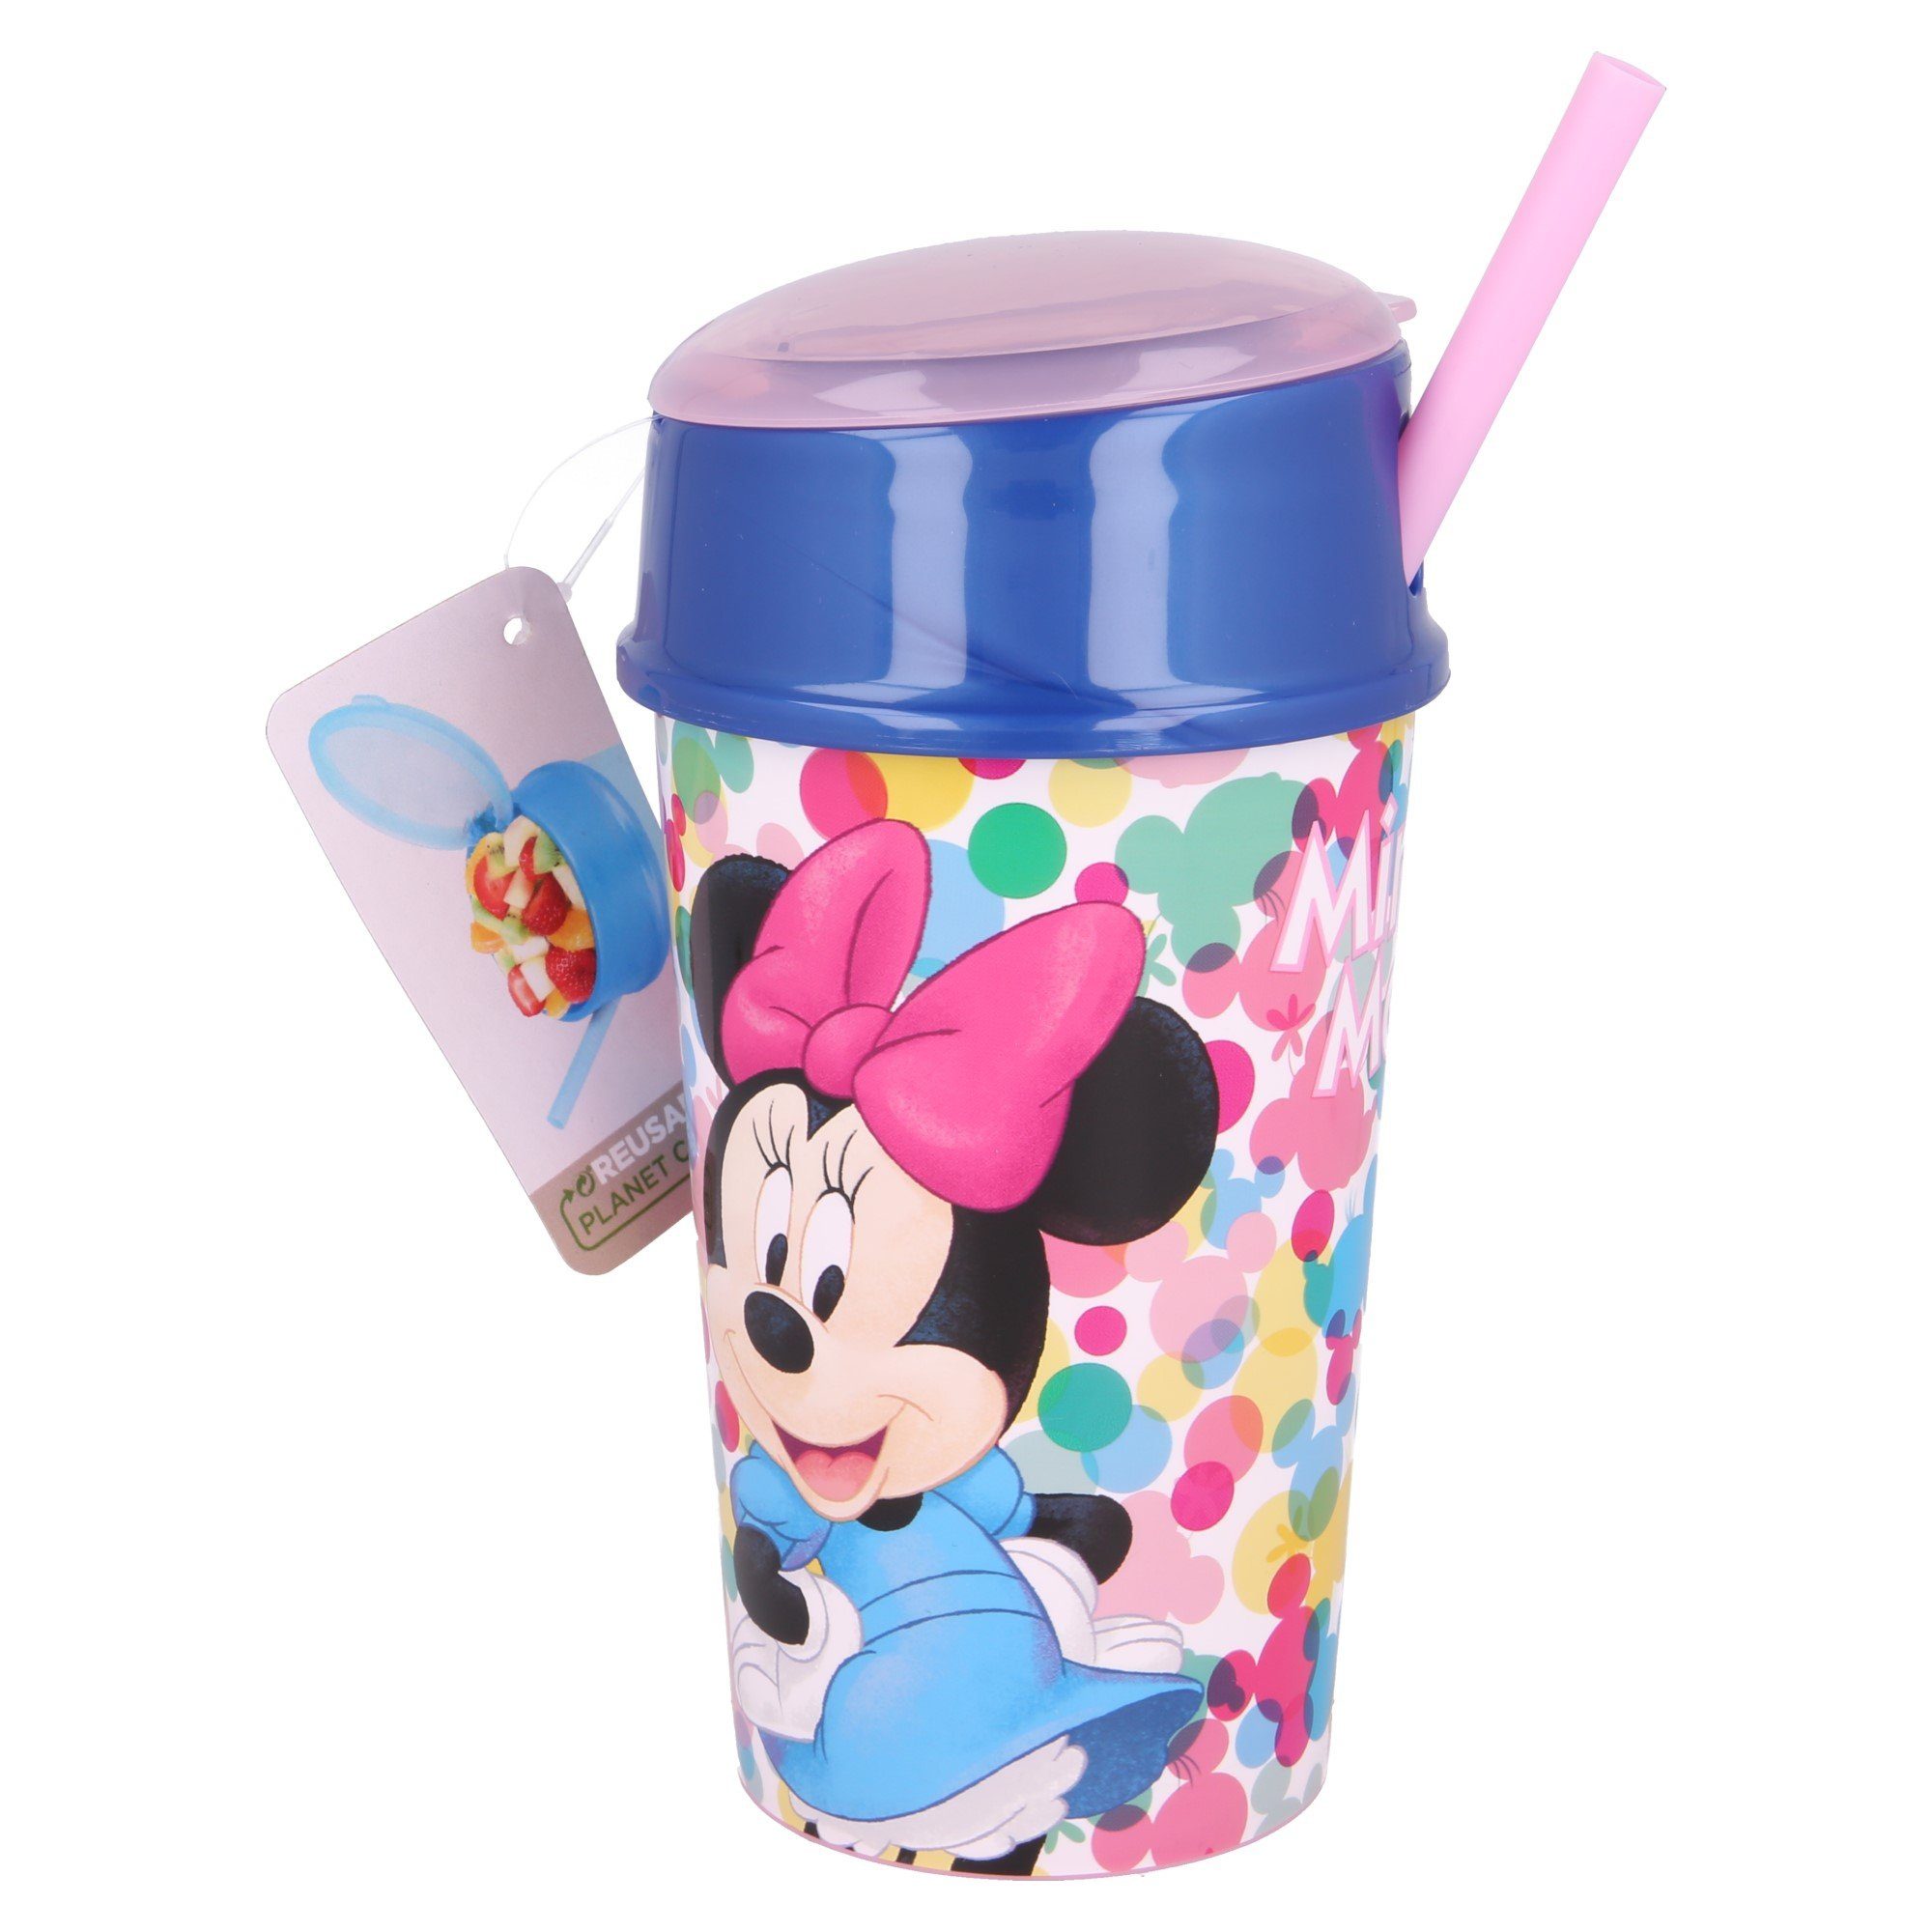 Disney Minnie Mouse - Kunststoff Becher mit Strohhalm - 430 ml